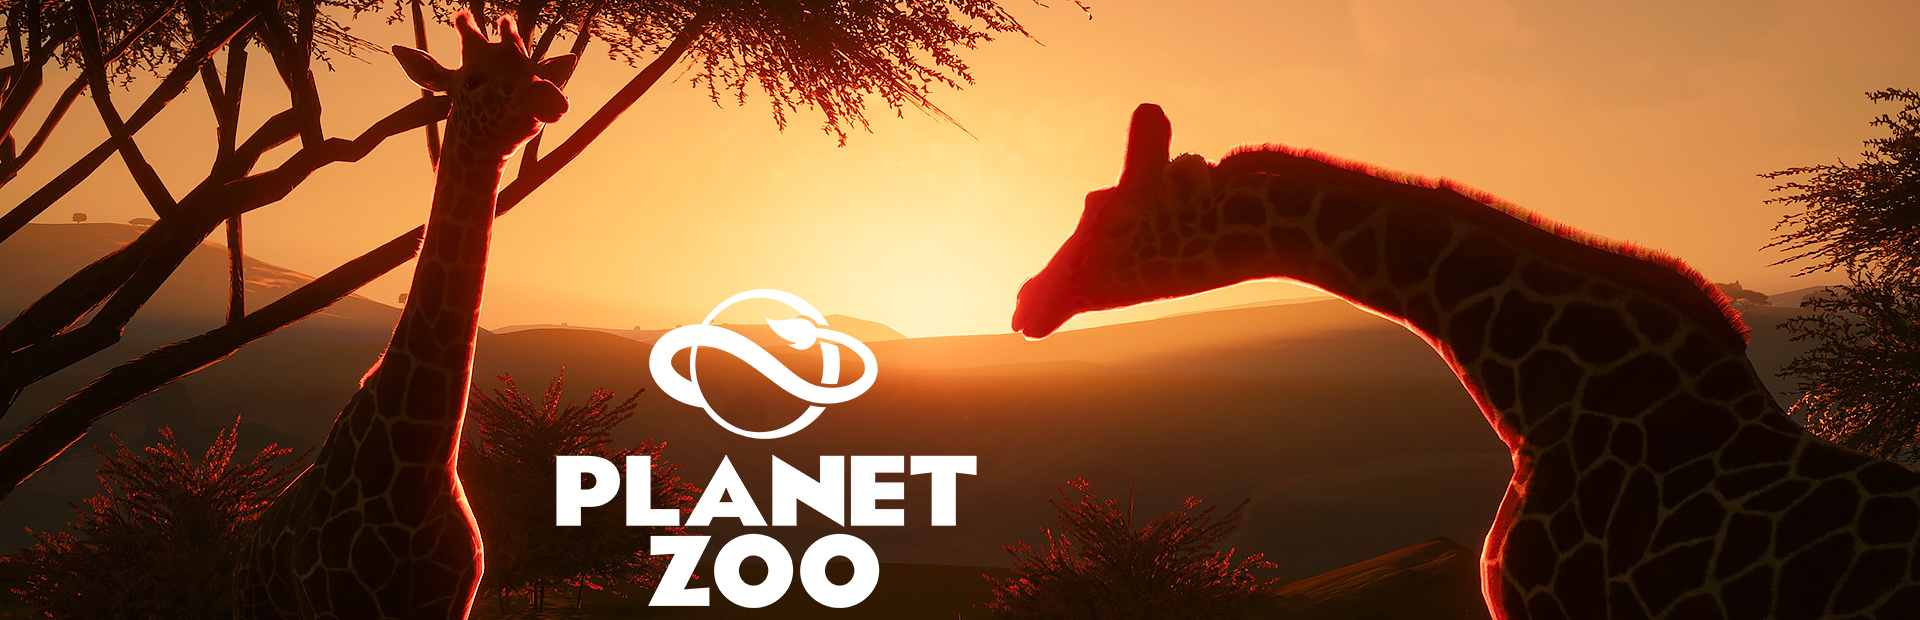 دانلود بازی Planet Zoo برای پی سی | گیمباتو